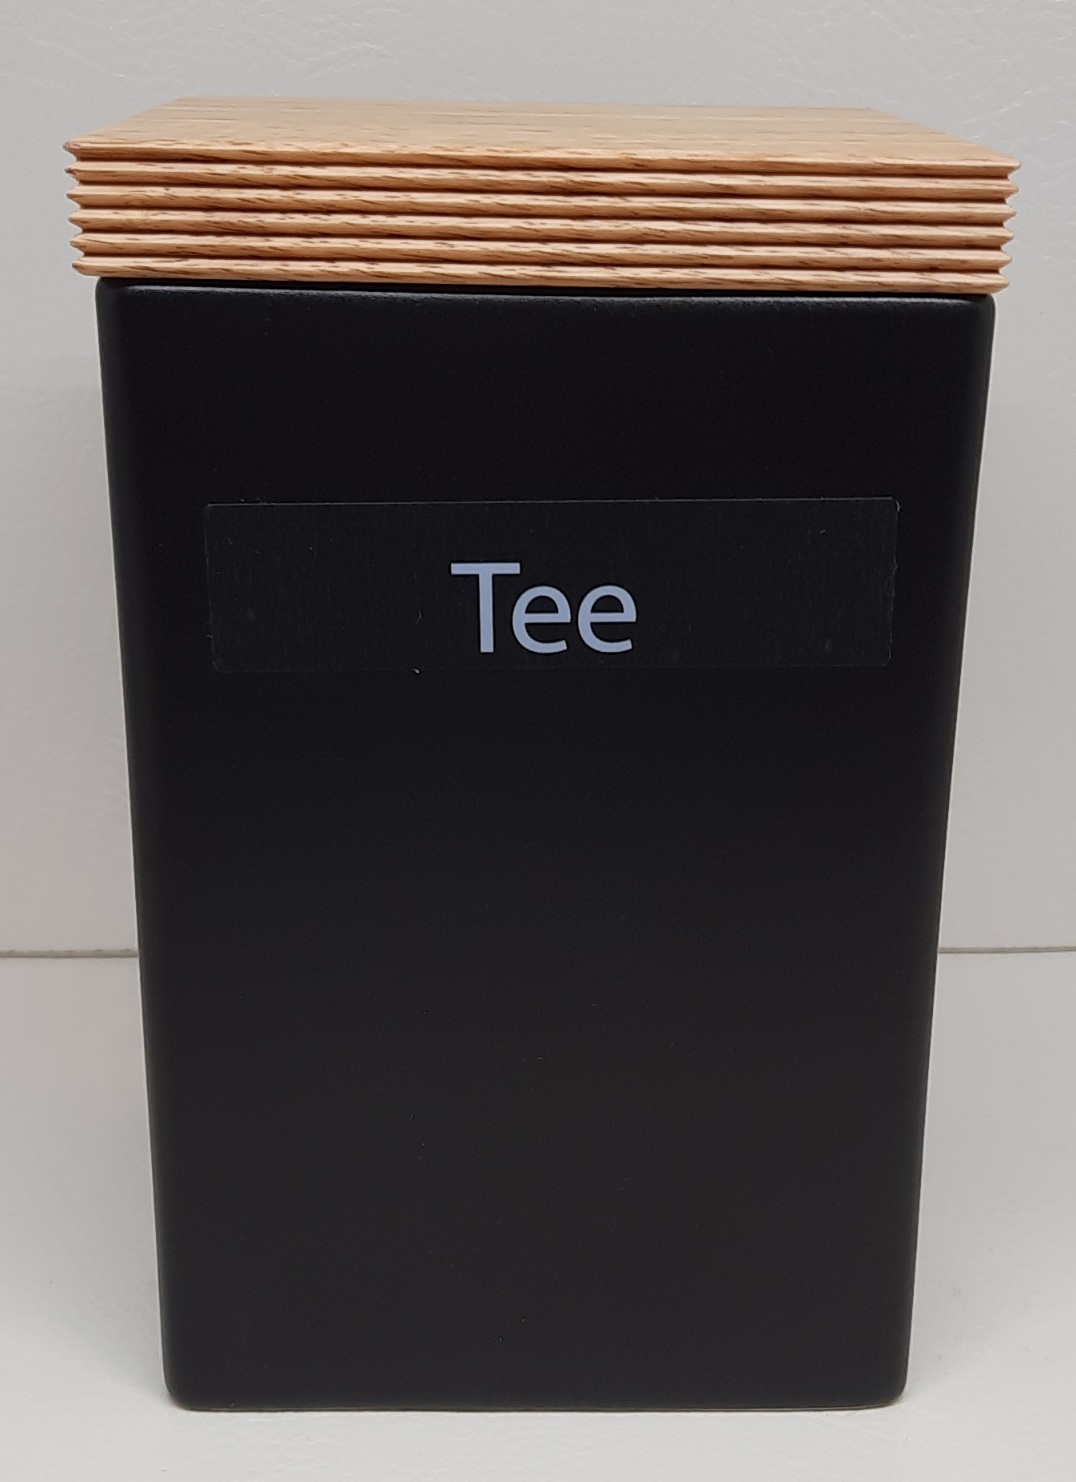 Vorratsdose quadratisch mit Holzdeckel,1000 ml  10 x 10 x 16,5 cm, matt schwarz Silikonring zum luftdichten Verschluss